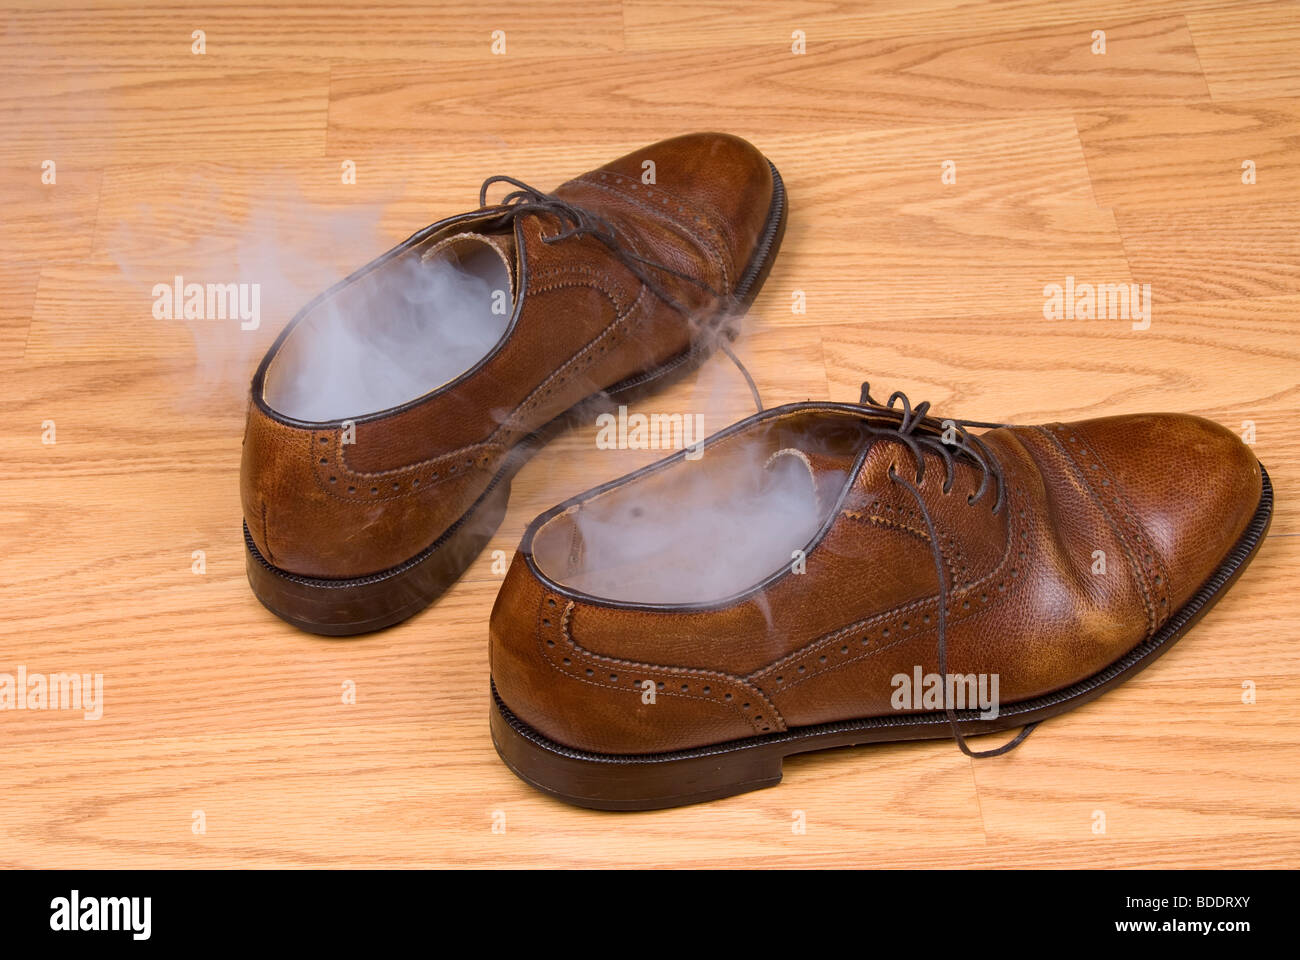 Un par de zapatos de vestir el vapor caliente después de un día de uso y desgaste. Foto de stock